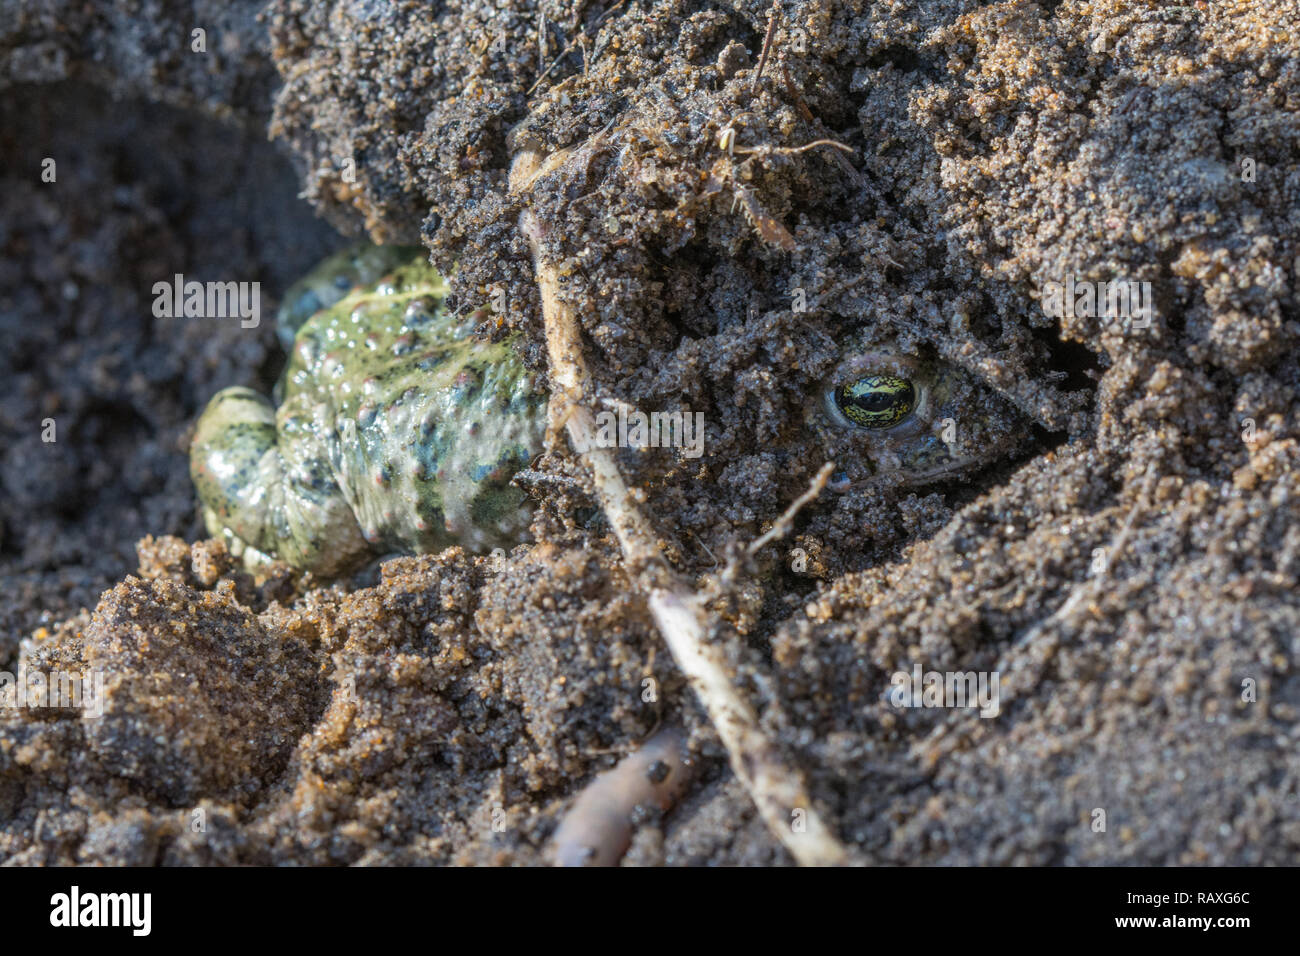 Natterjack toad (Epidalea calamita) scavando nella sabbia sulla brughiera in Hampshire, Regno Unito Foto Stock